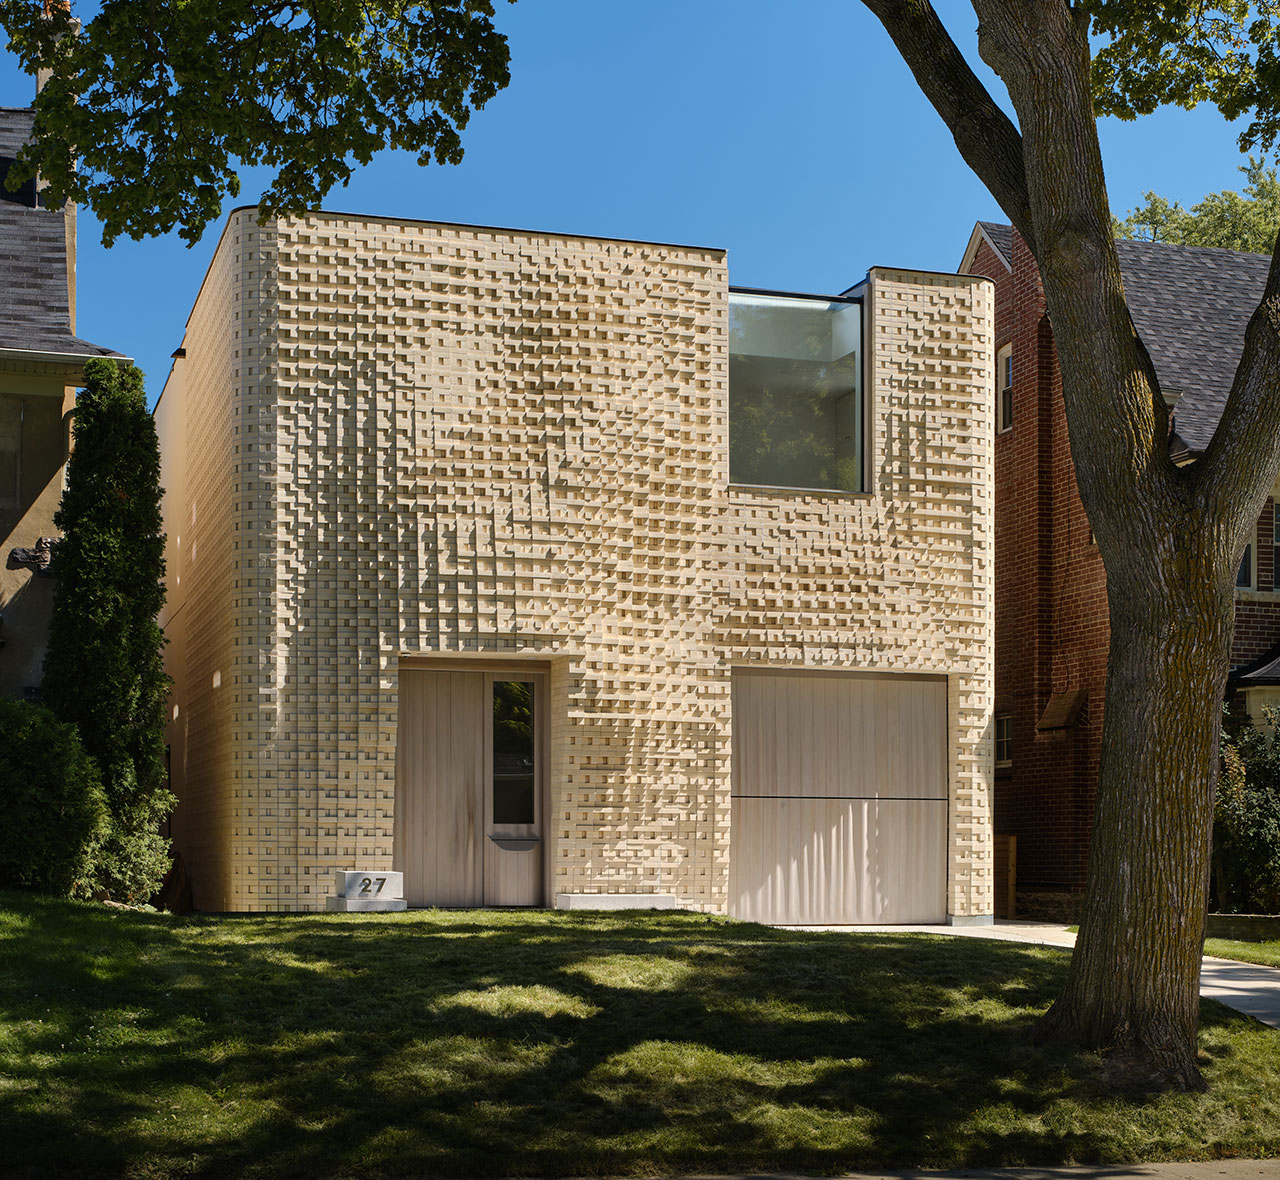 Canvas House: A Toronto Home With an Undulating Sculptural Facade